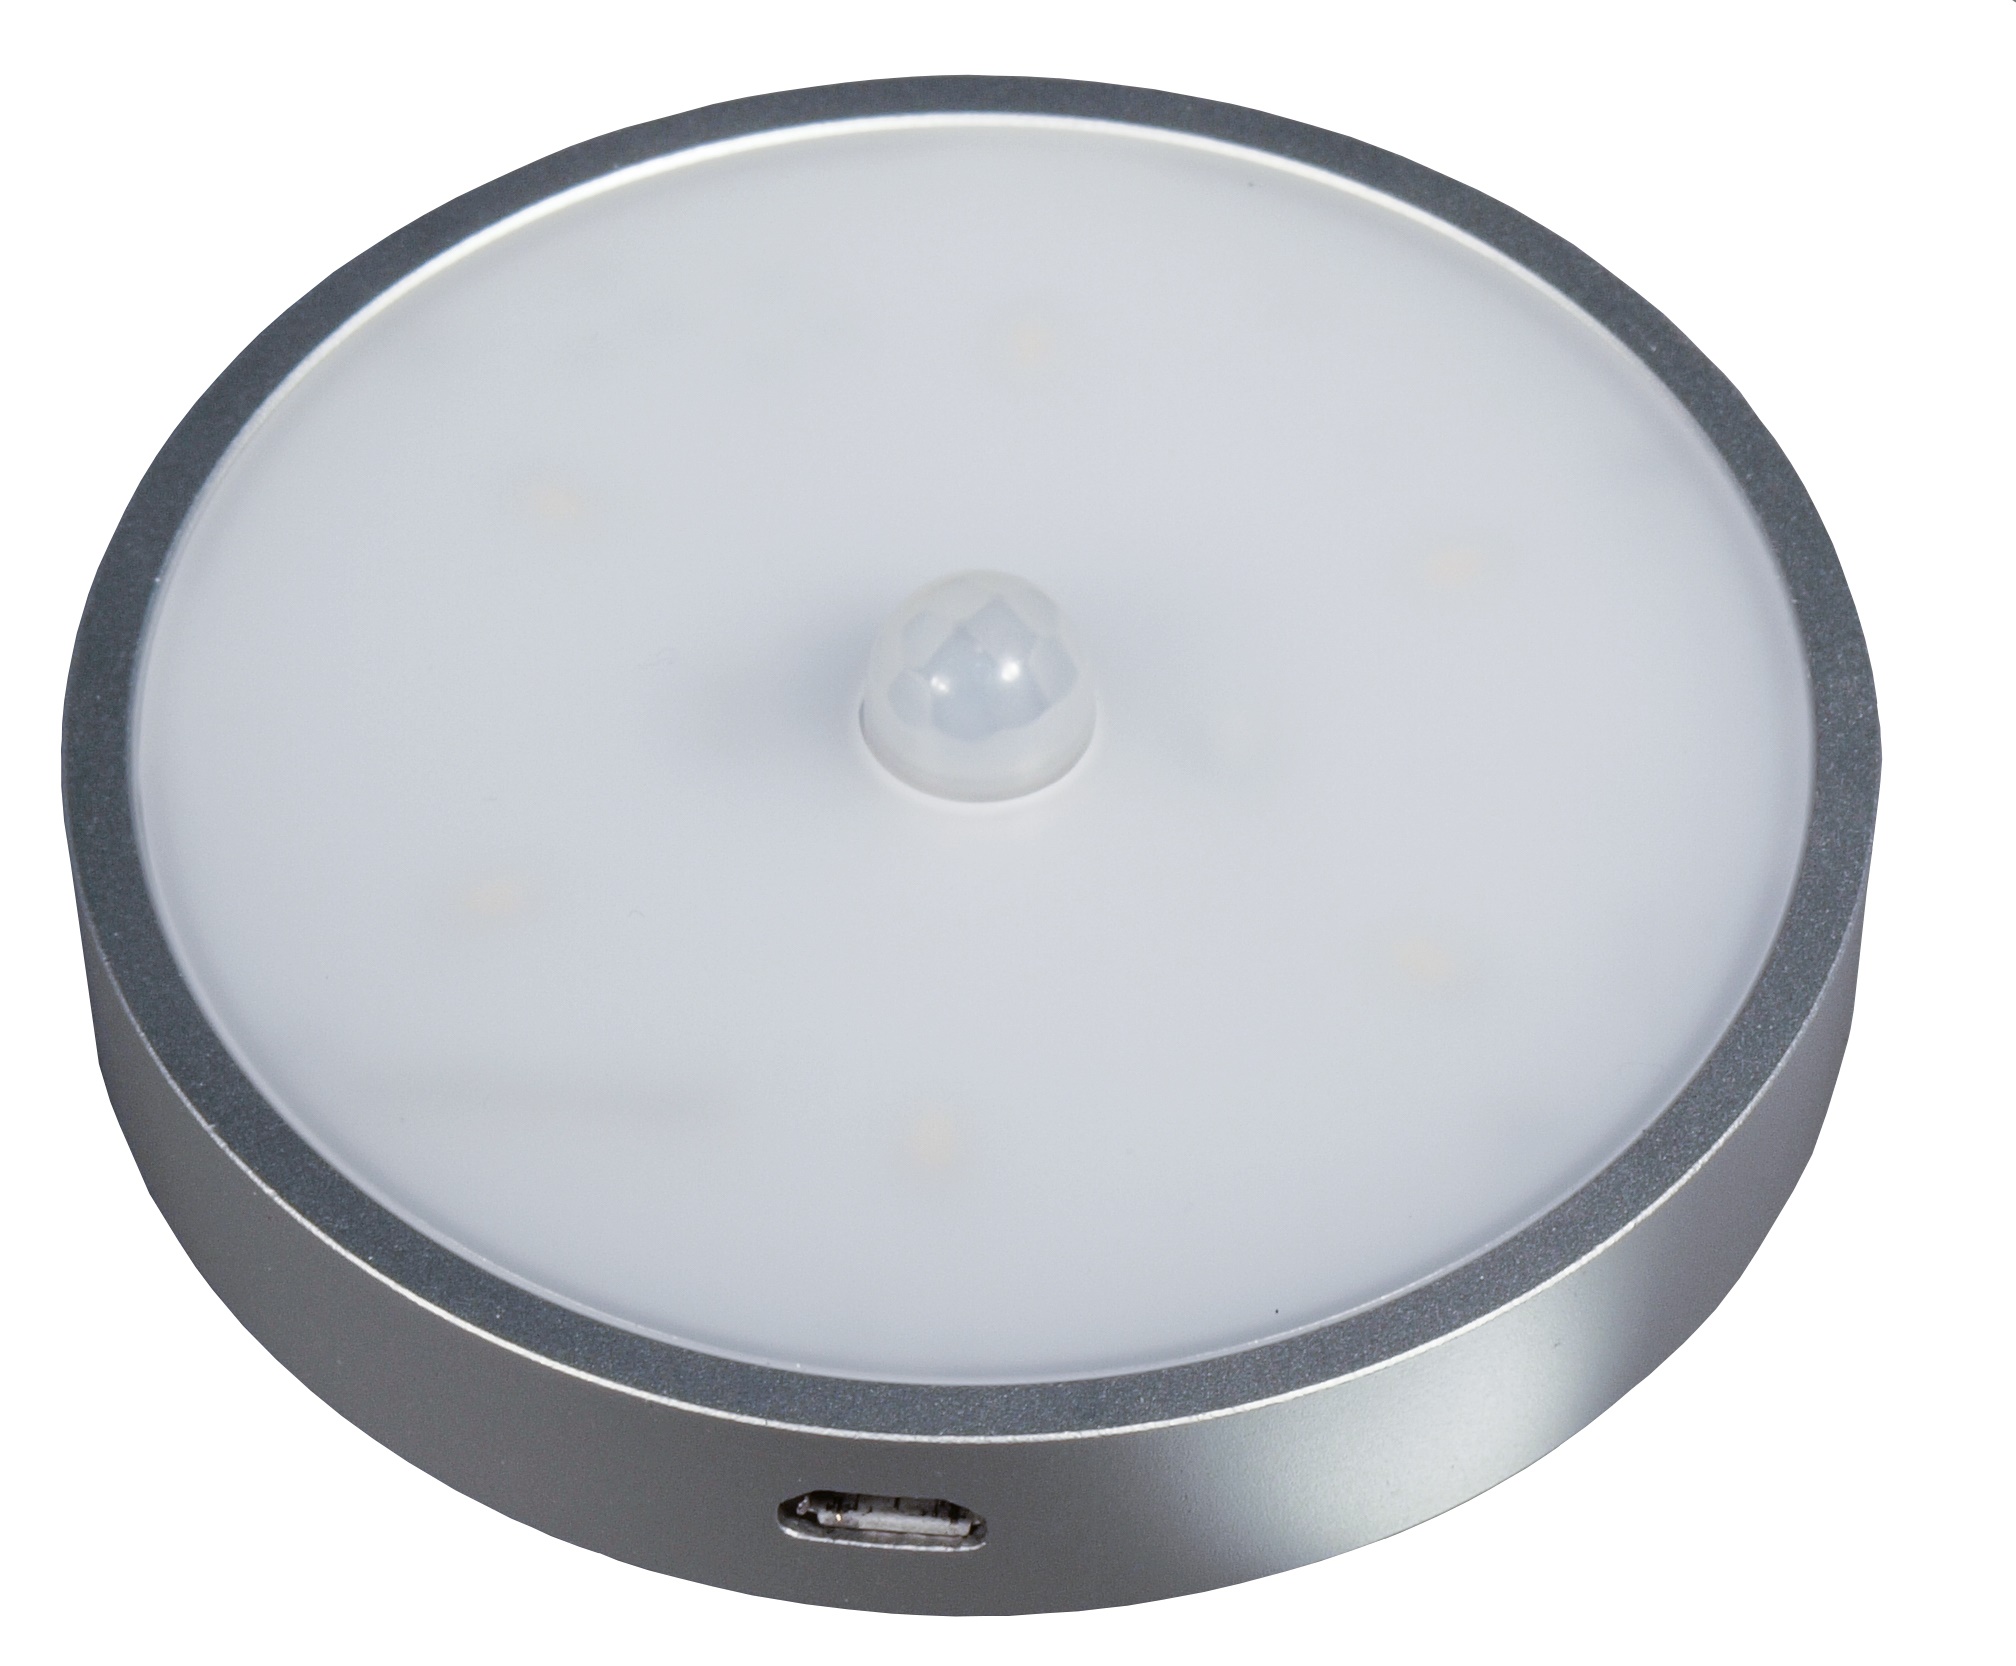 LED Centalius | беспроводный мебельный светодиодный светильник, наклонный, на аккумуляторе, с датчиком движения | GLS